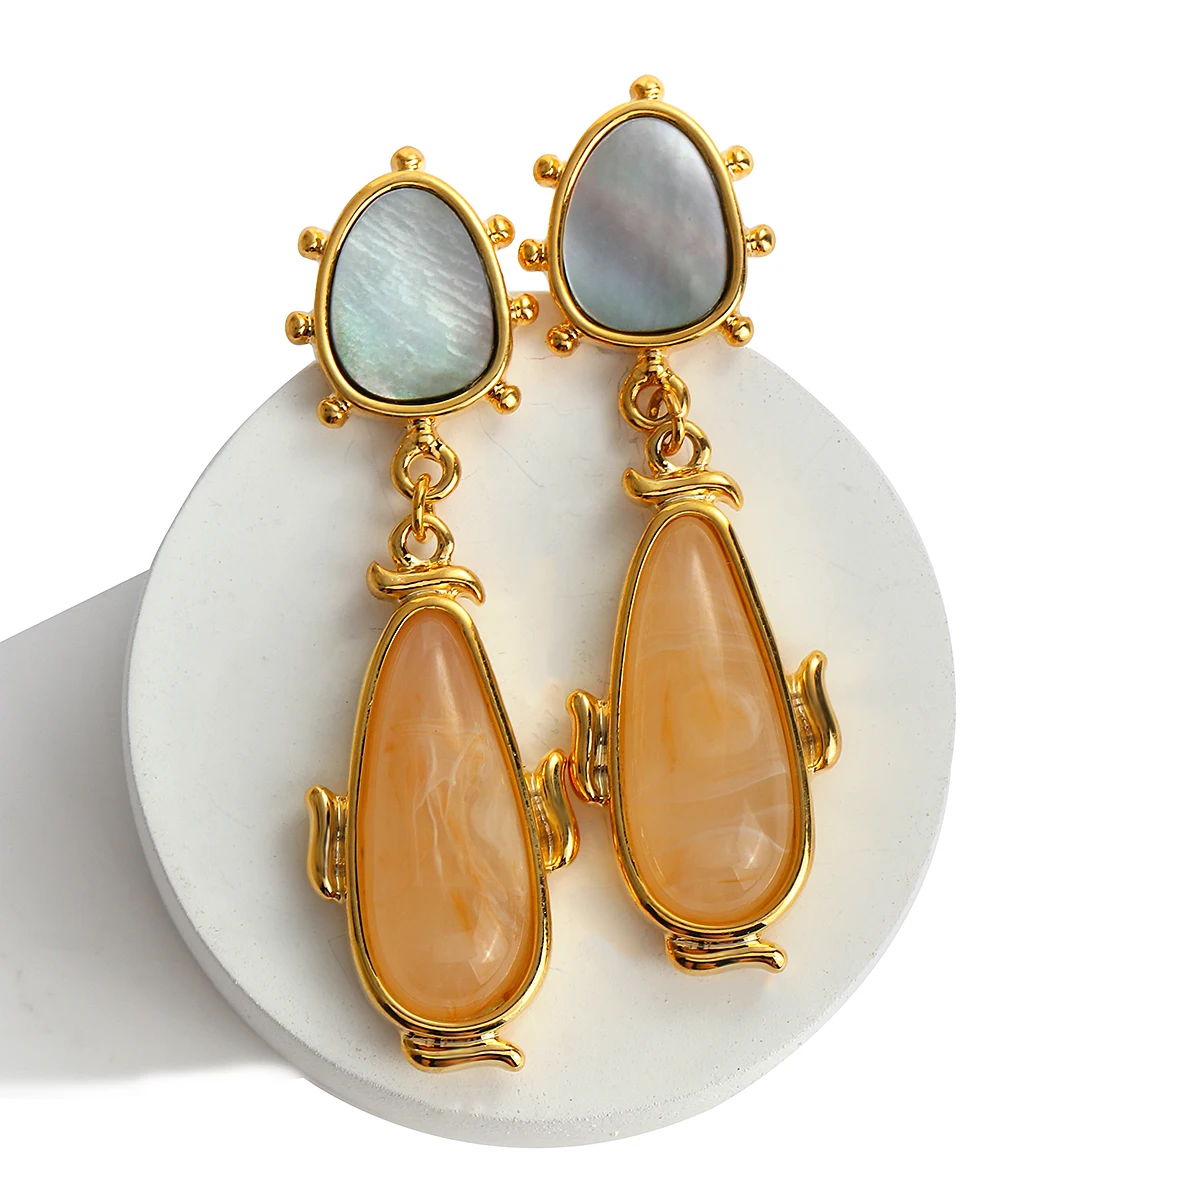 

AENSOA Vintage Stone Shell Geometric Drop Earrings For Women Elegant Acrylic Long Earrings Pendant Statement Party Jewelry 2021